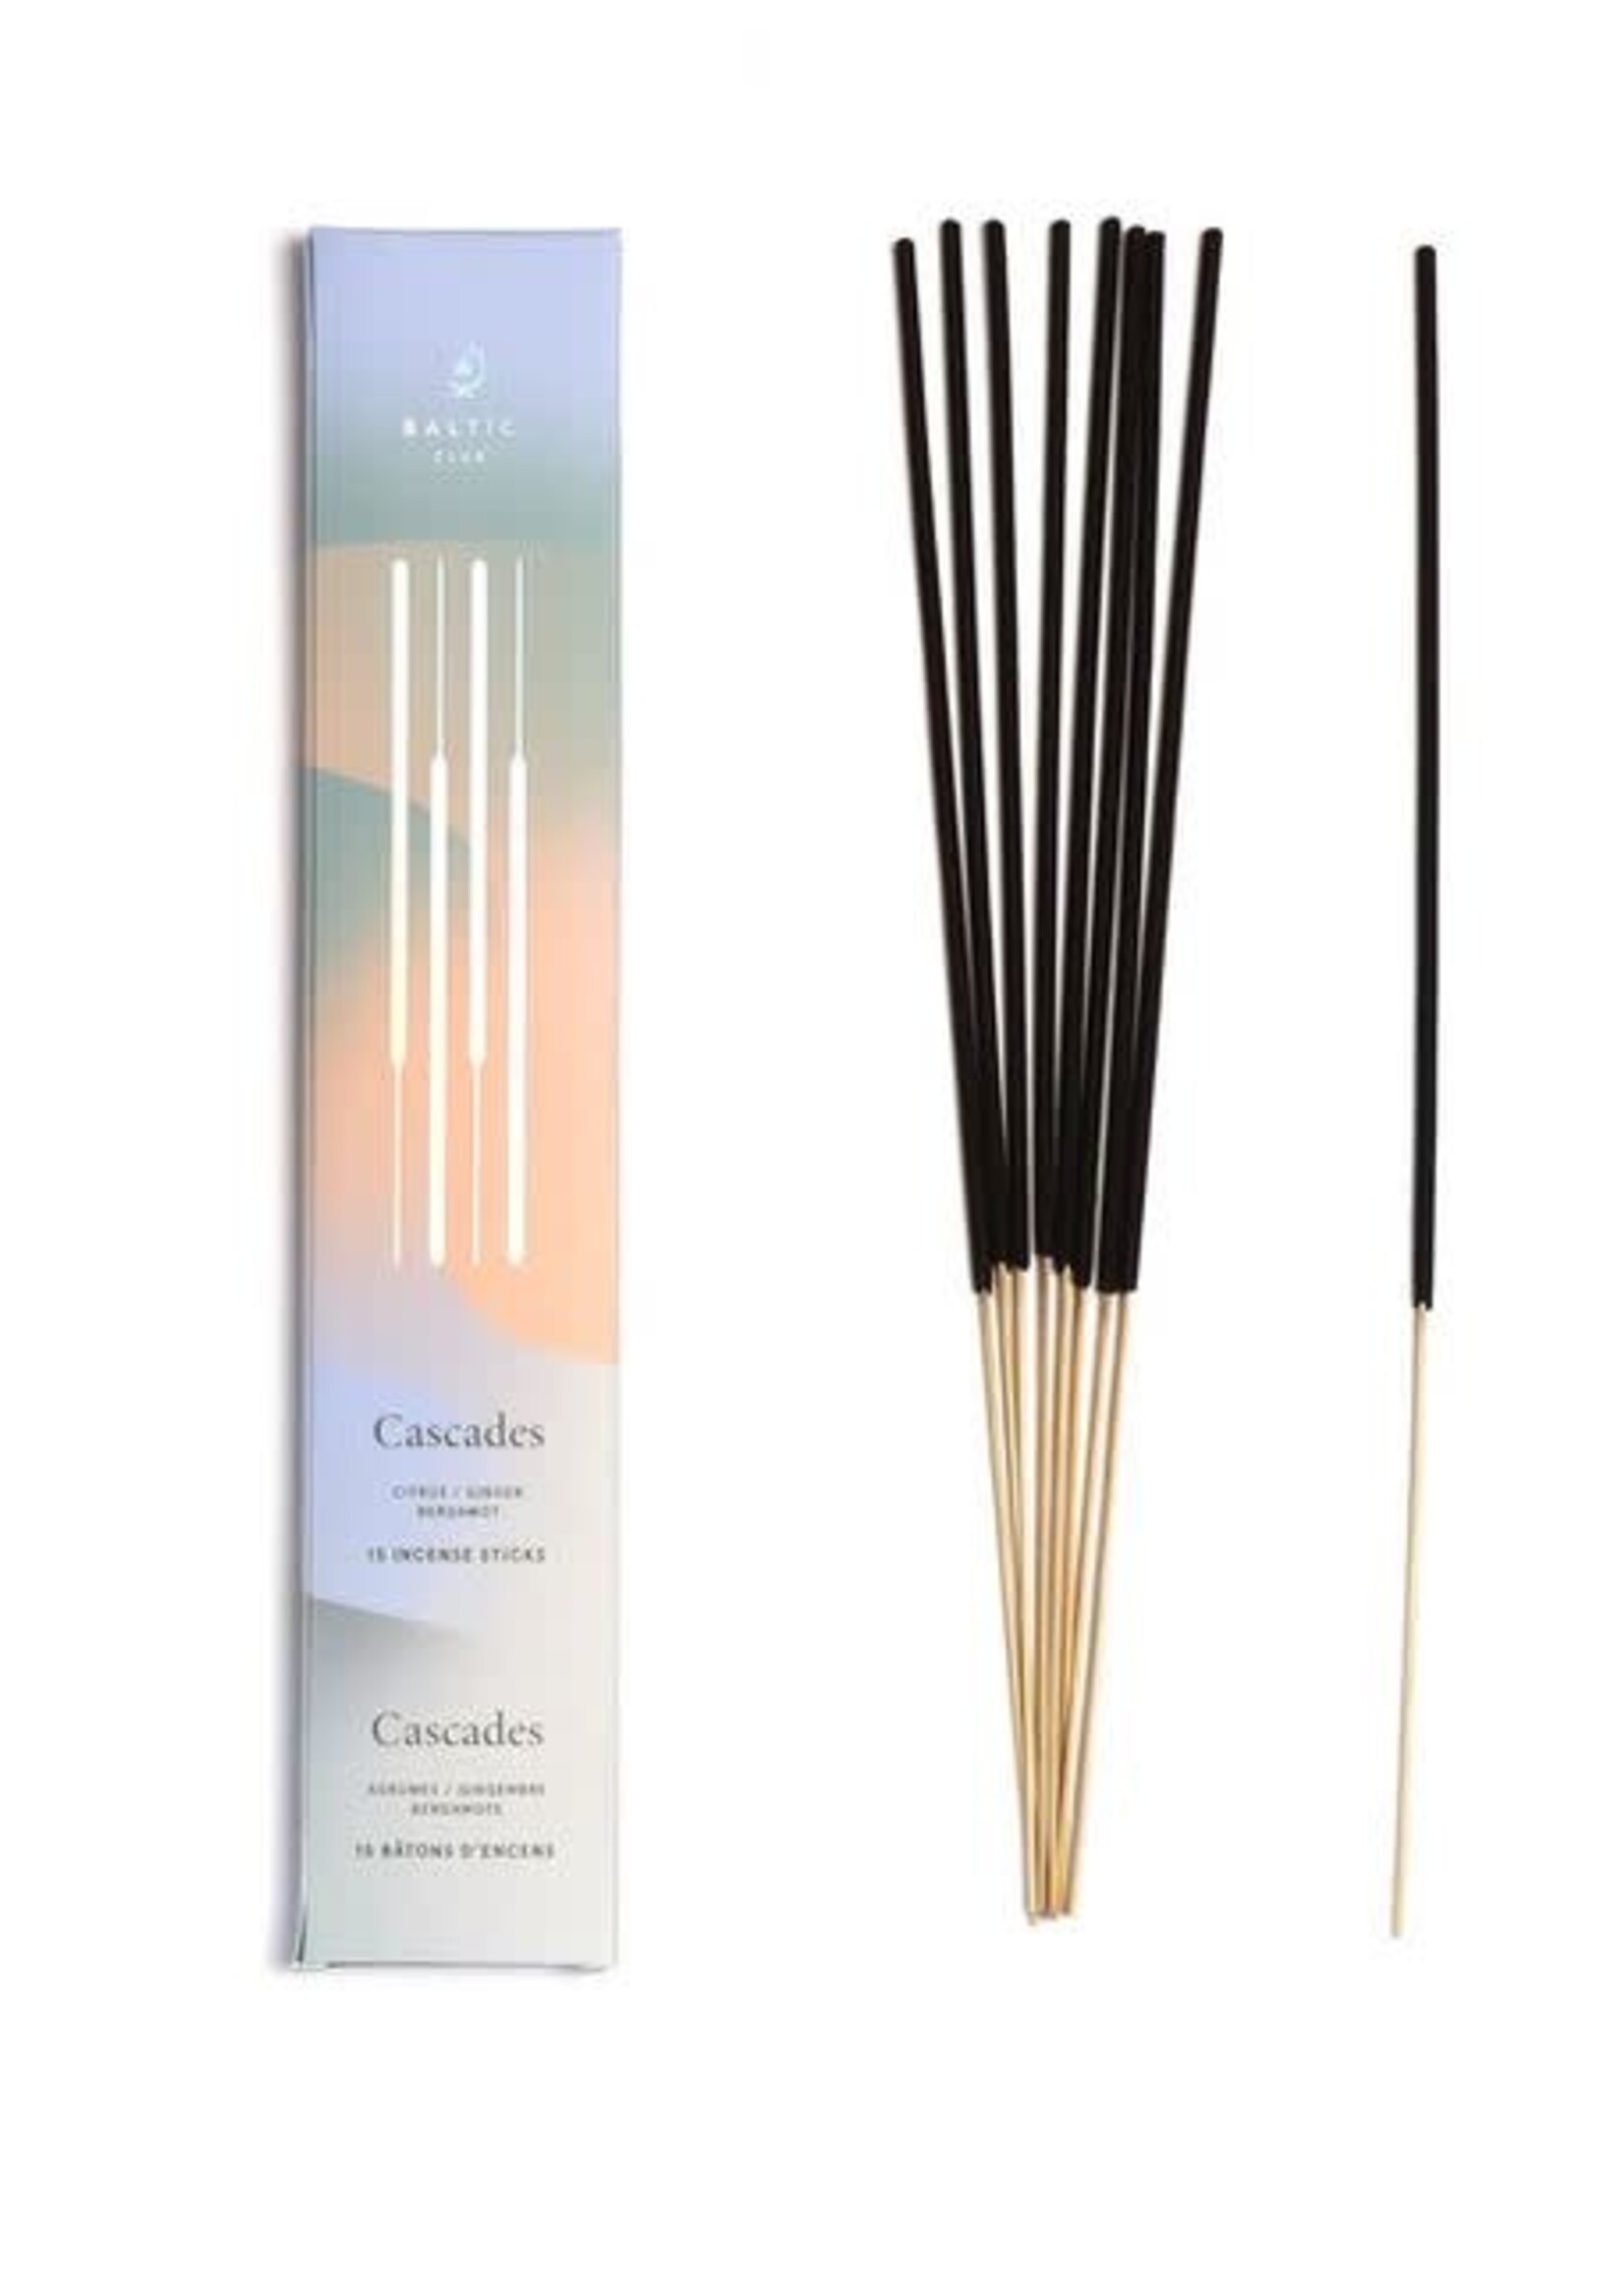 Baltic Club Incense Sticks - Cascades